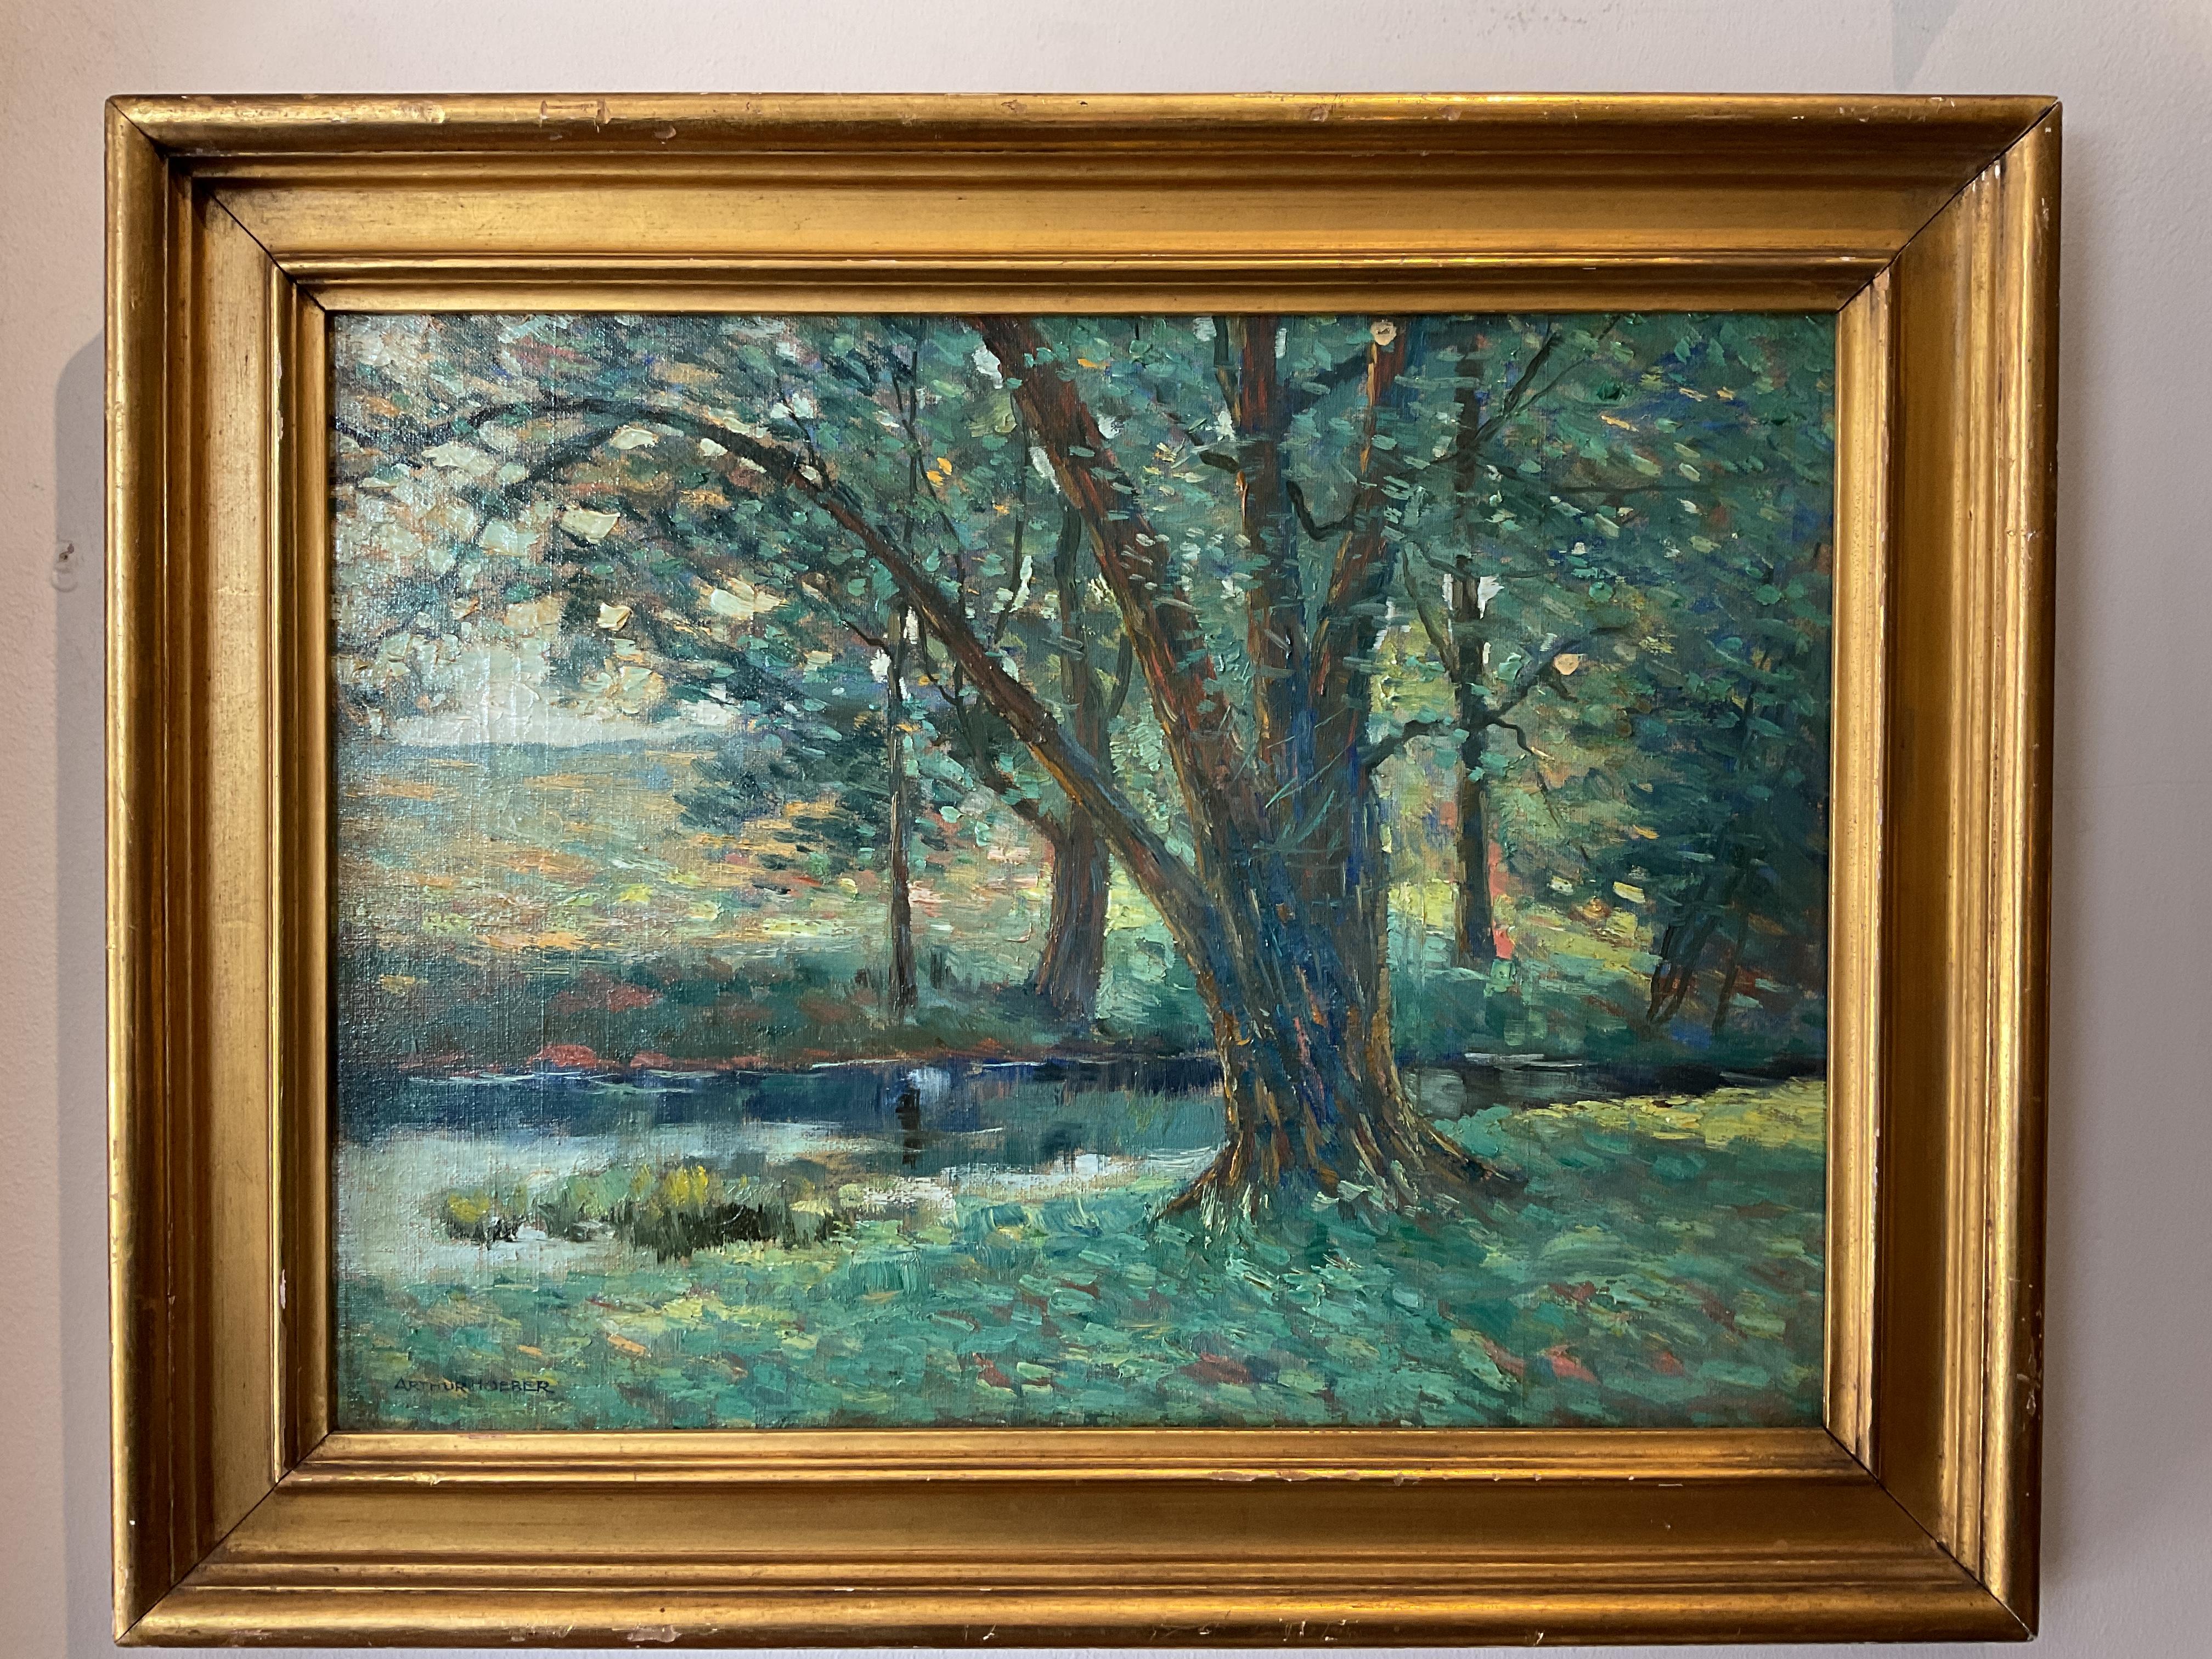 Dieses schöne Ölgemälde des amerikanischen Impressionismus zeigt einen stattlichen Weidenbaum am Ufer eines Baches. Der Künstler Arthur Hoeber (1854-1915) verwendete eine bunte Palette in Kombination mit Farbtupfern in einer impressionistischen